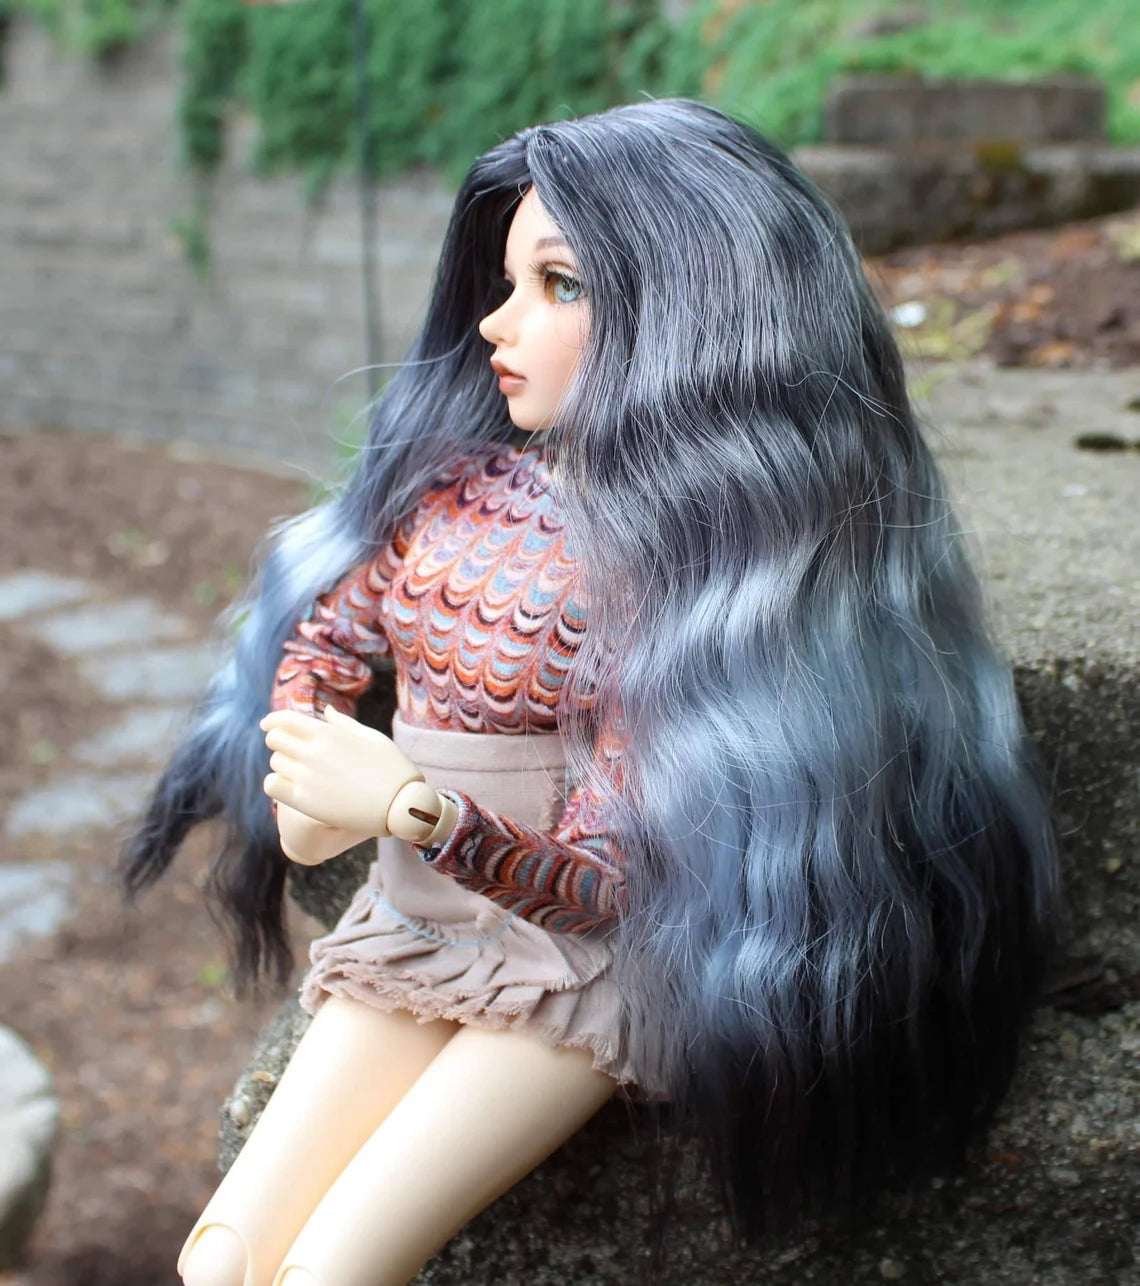 Custom doll Wig for Minifee 1/4 BJD Dolls- "TAN CAPS" 6-7" head size of Bjd, msd, Boneka ,Fairyland Minifee dolls unicorn limited